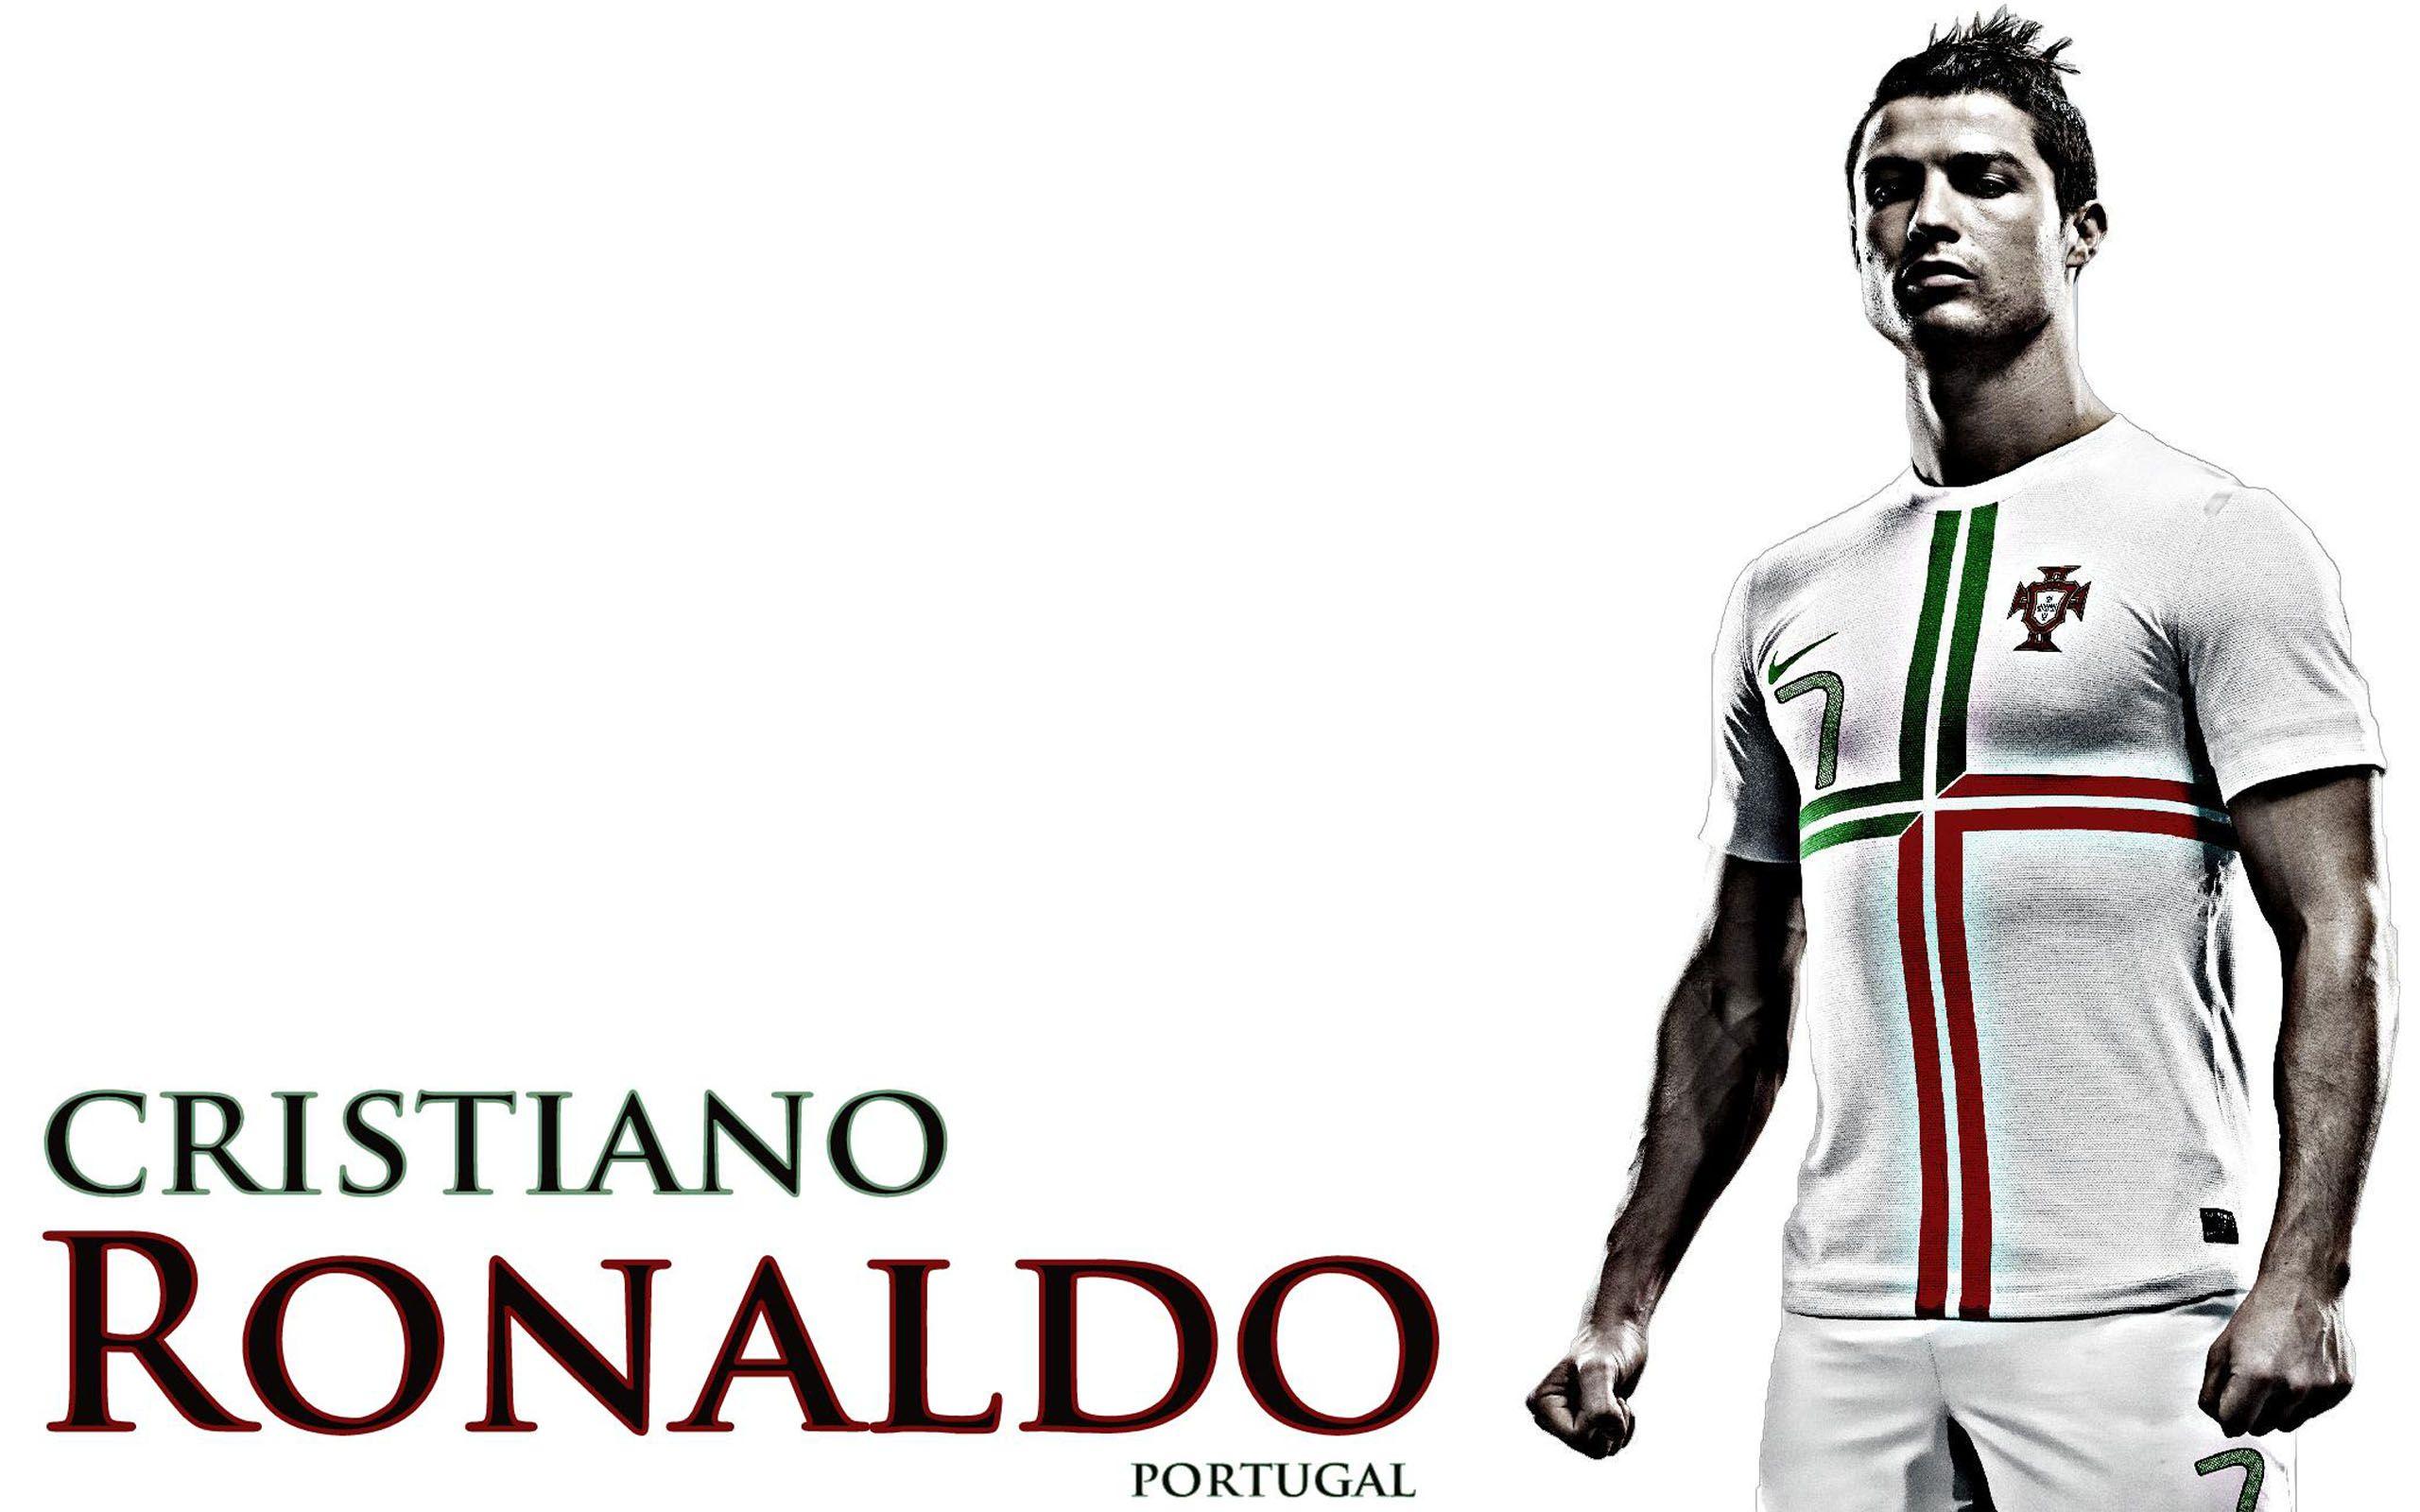 Cristiano Ronaldo Portugal Wallpaper. High Definition Wallpaper